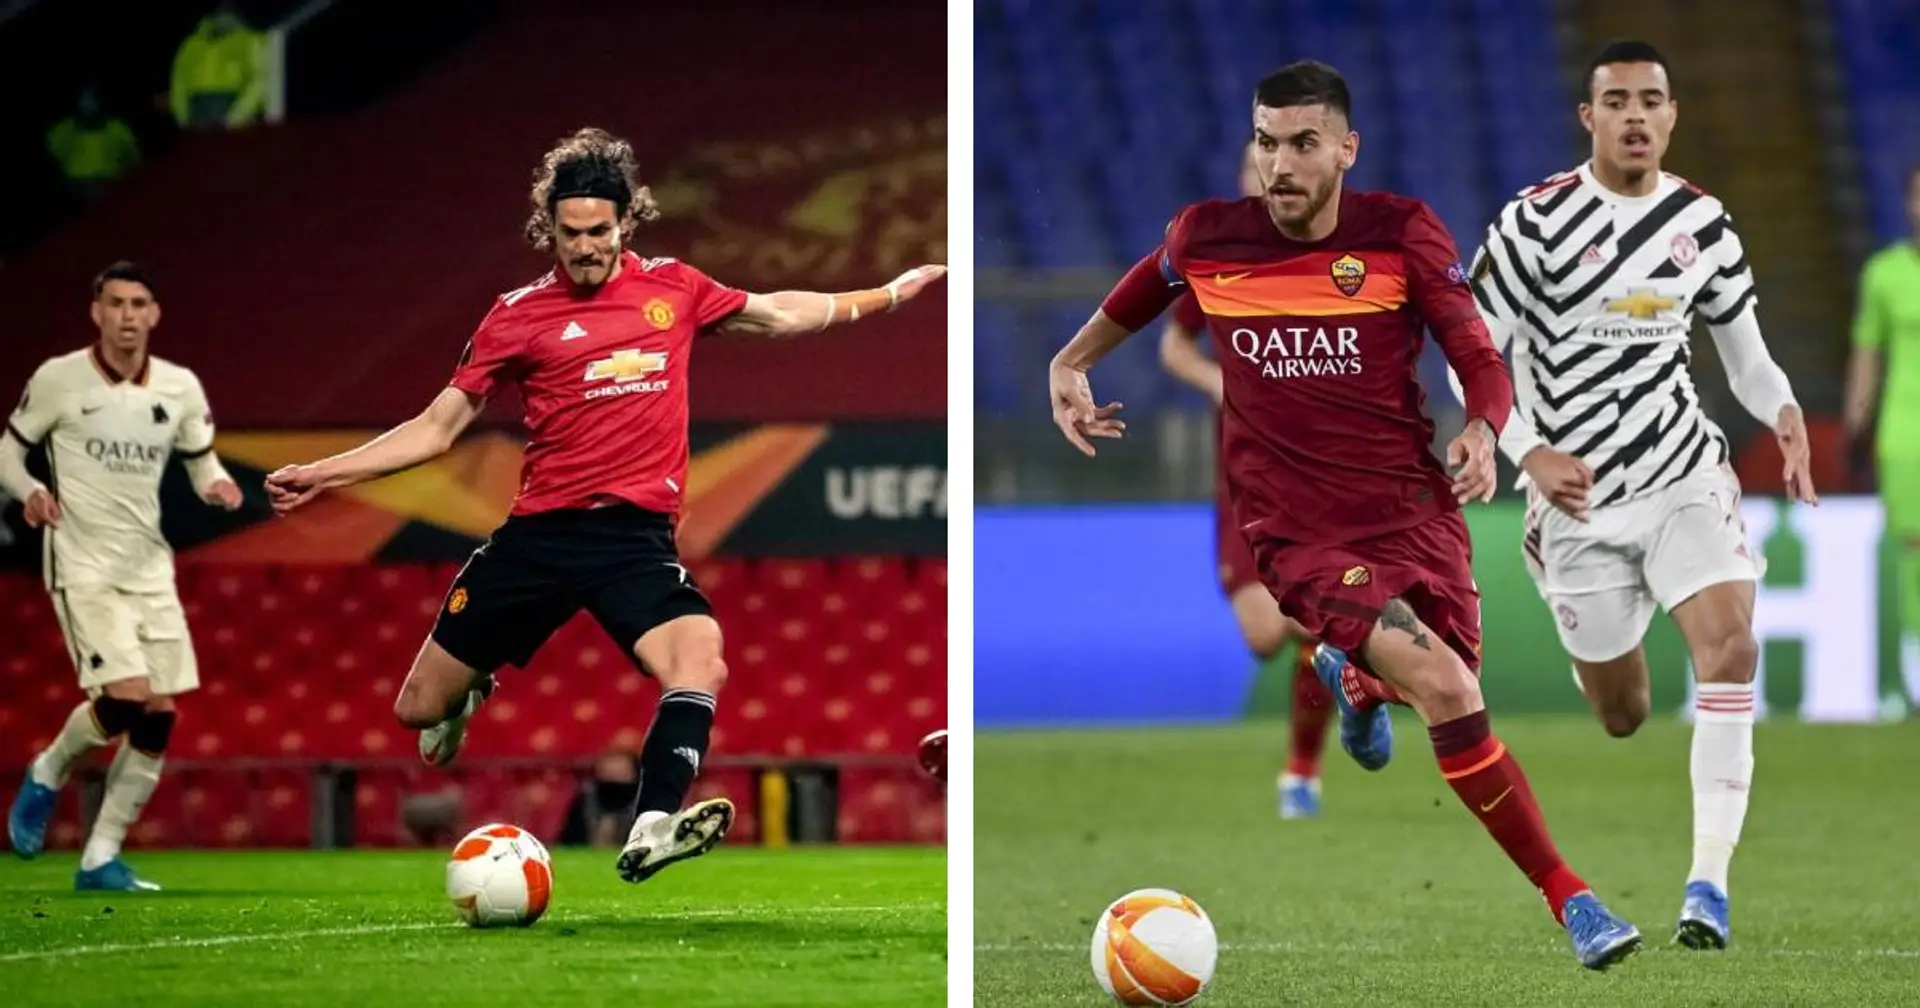 Grande rimpianto Roma: i 45' di Manchester fatali per il destino dei giallorossi in Europa League 